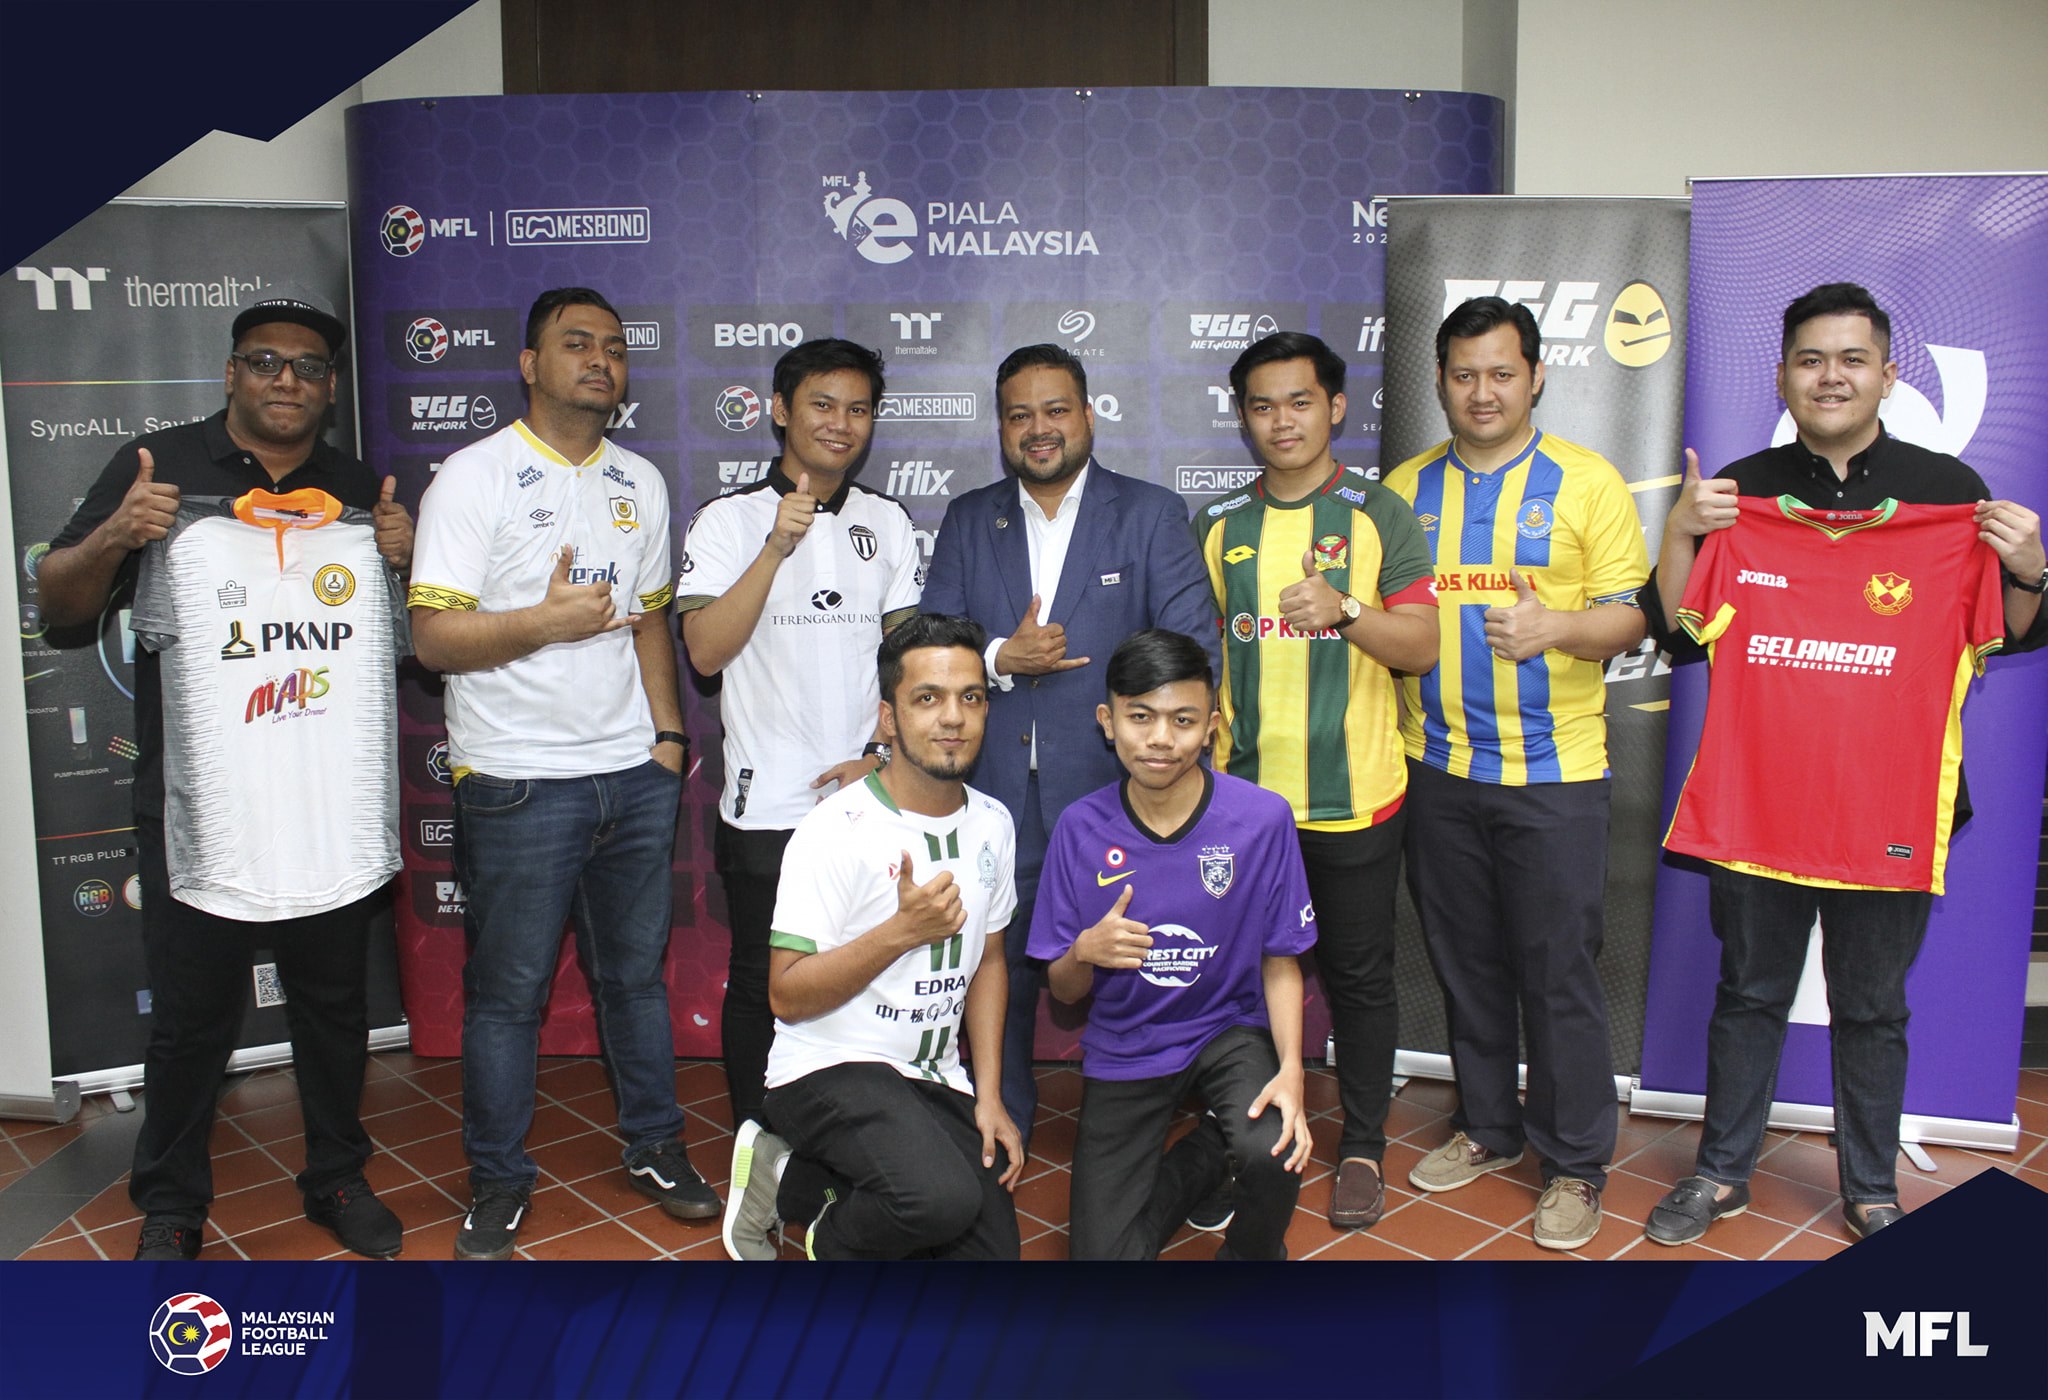 Malasia Football League lanza ePiala Malaysia 2019